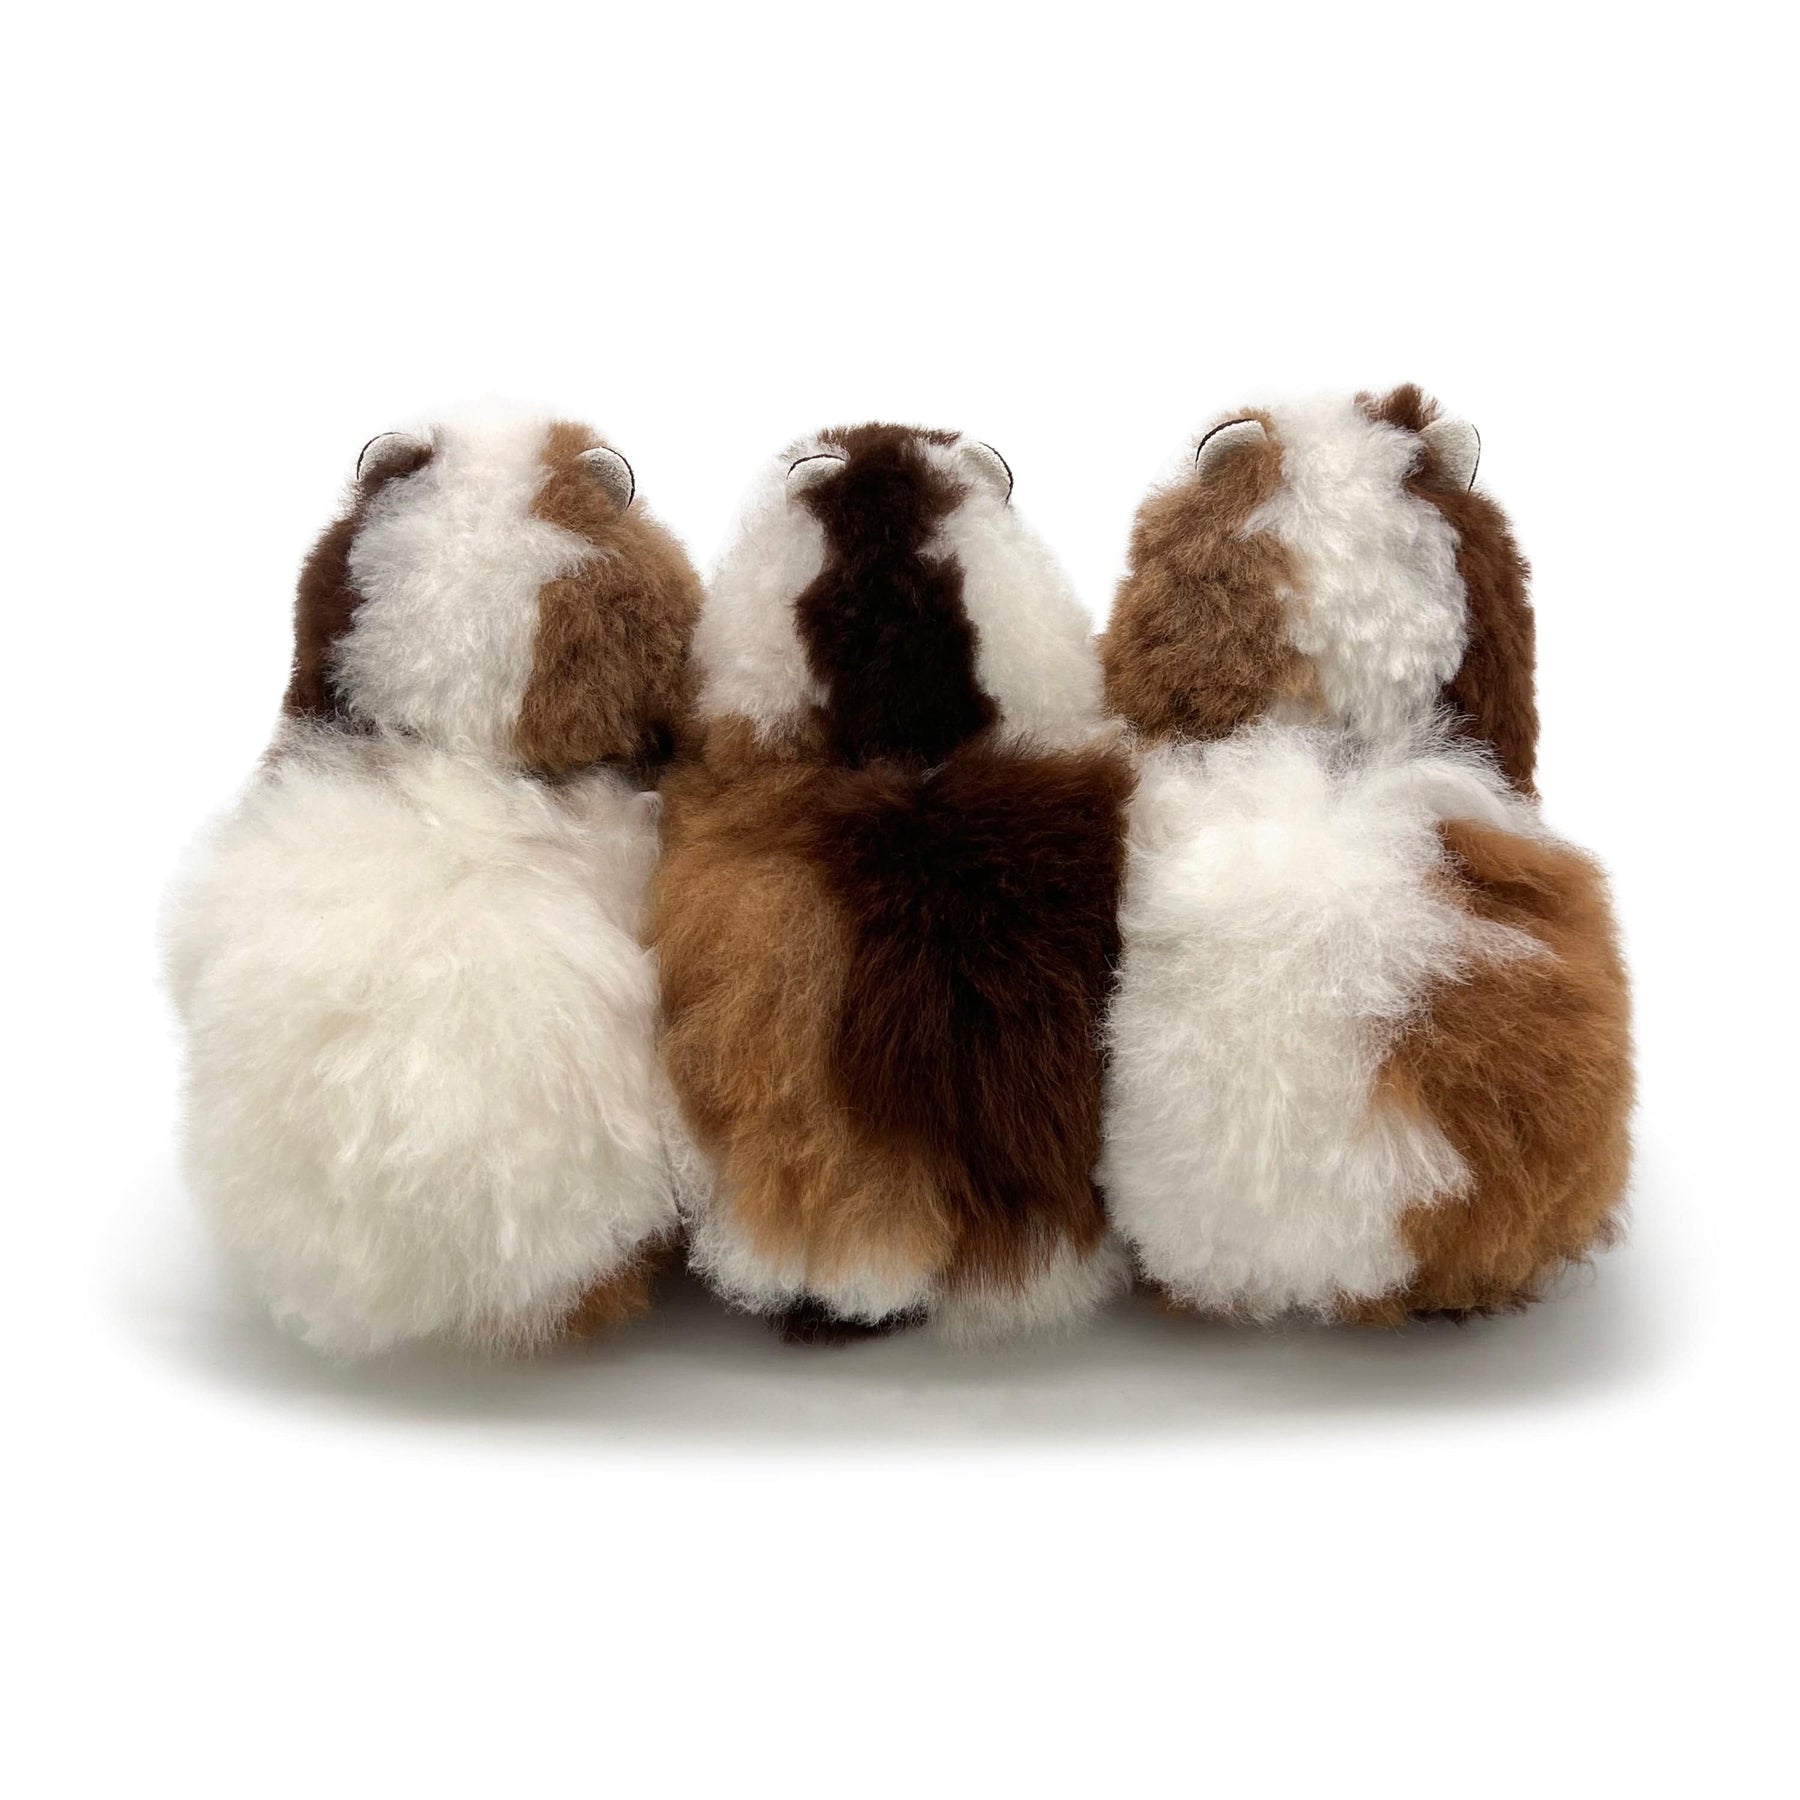 Herbst – Kleines Alpaka-Spielzeug (23 cm) – limitierte Auflage